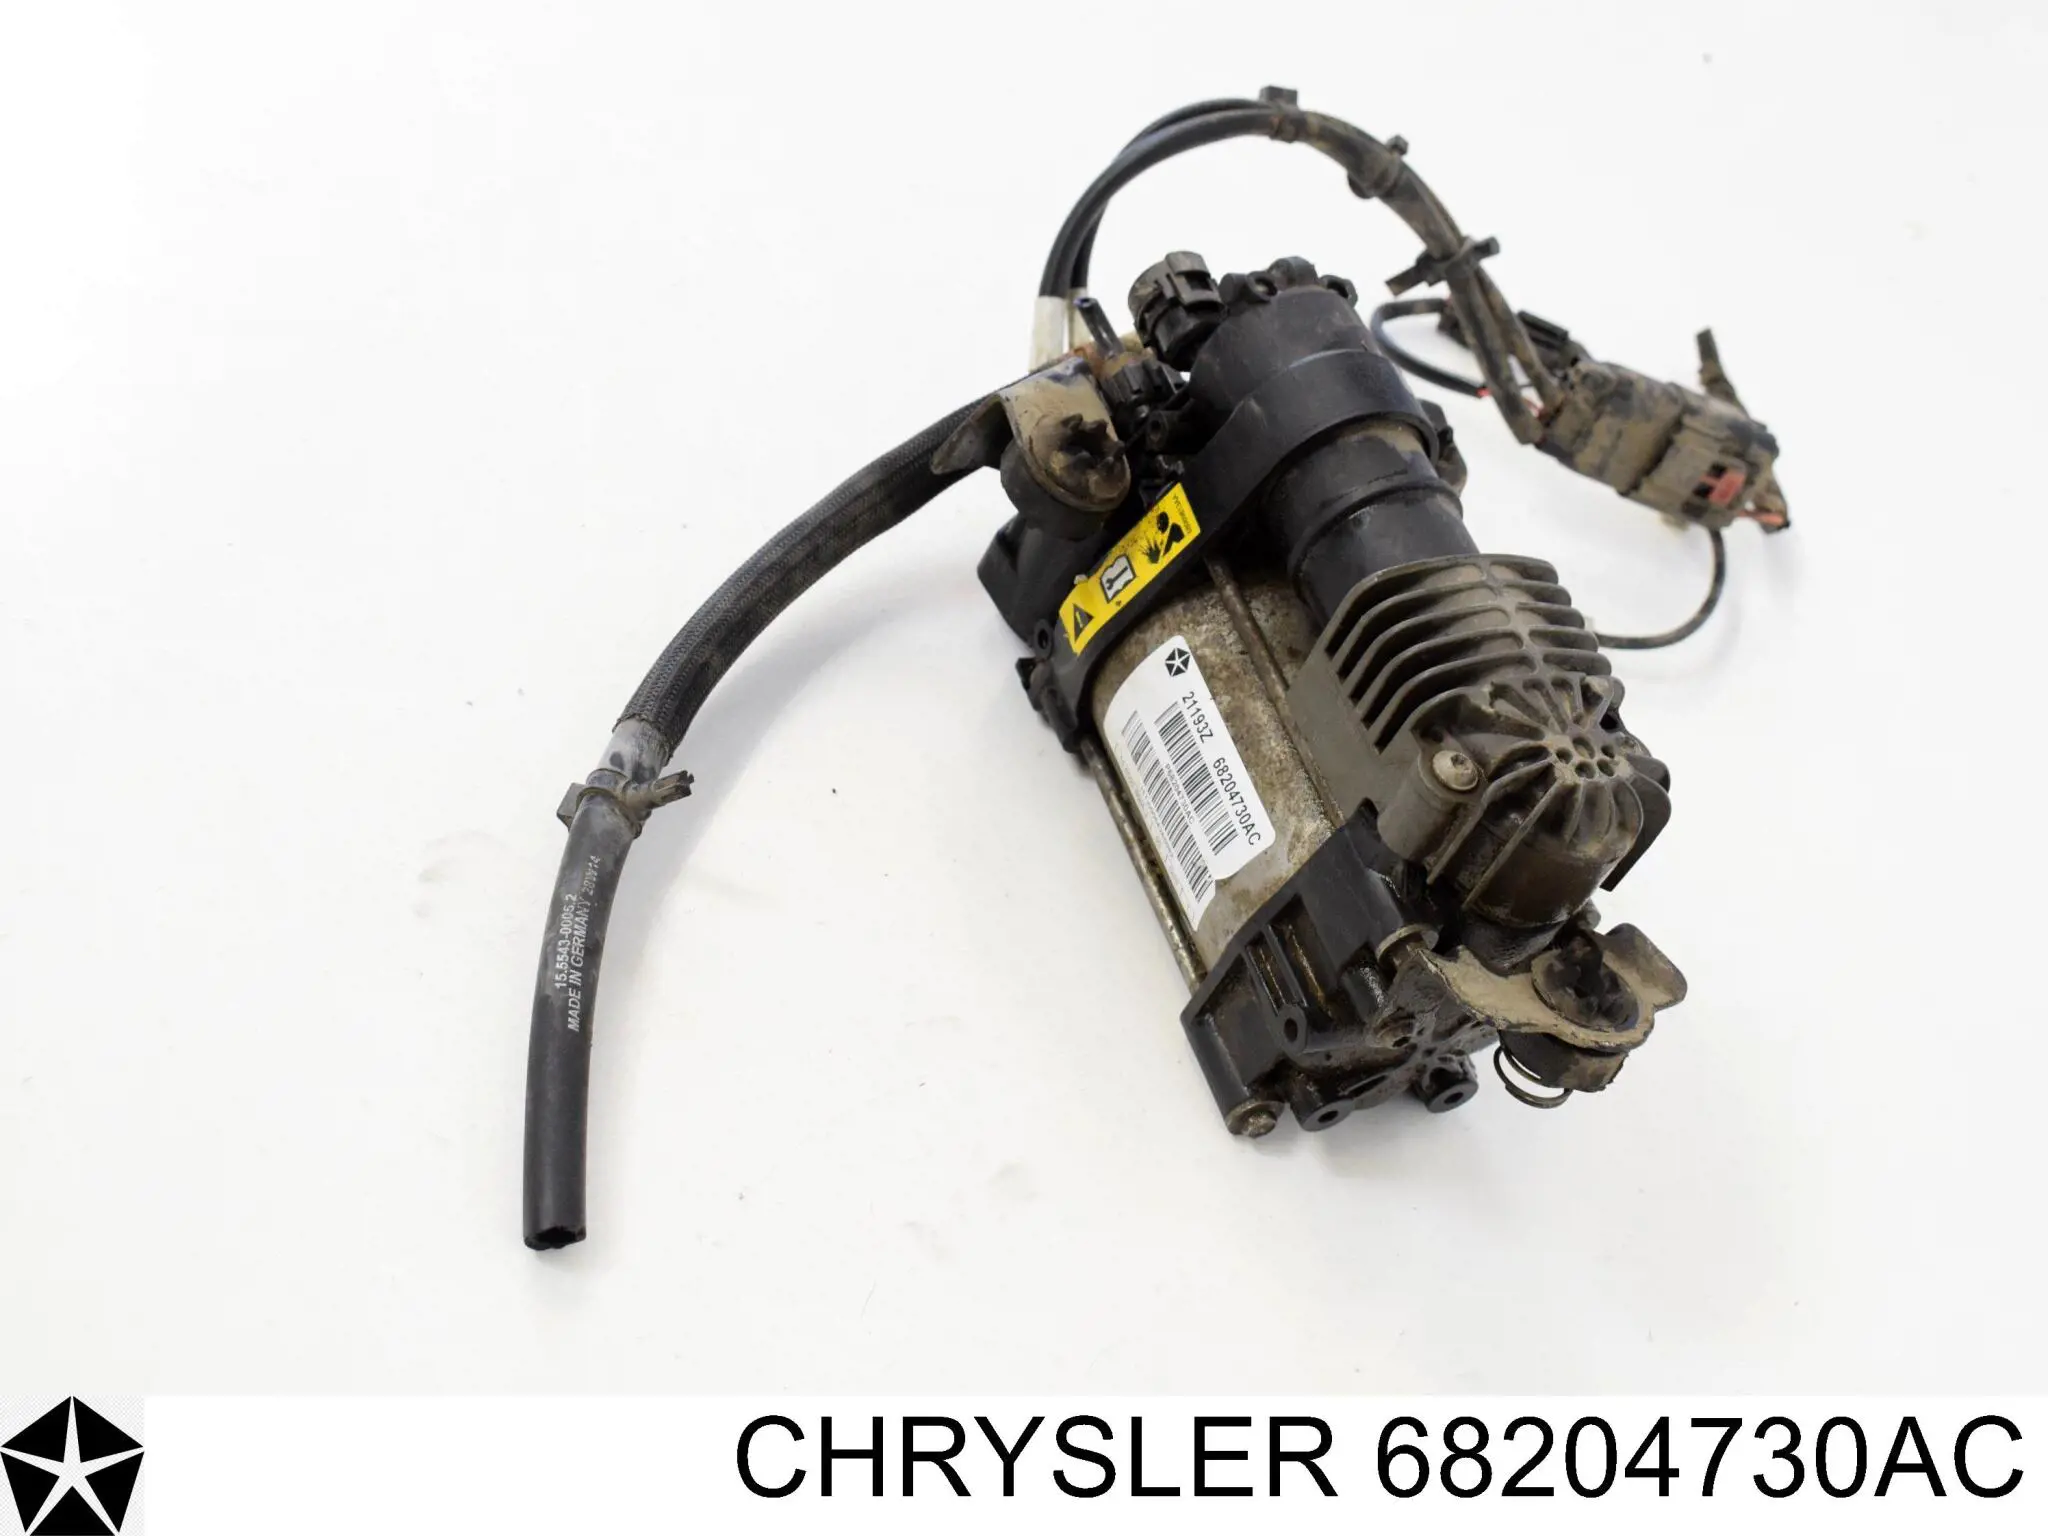 68204730AC Chrysler bomba de compresor de suspensión neumática